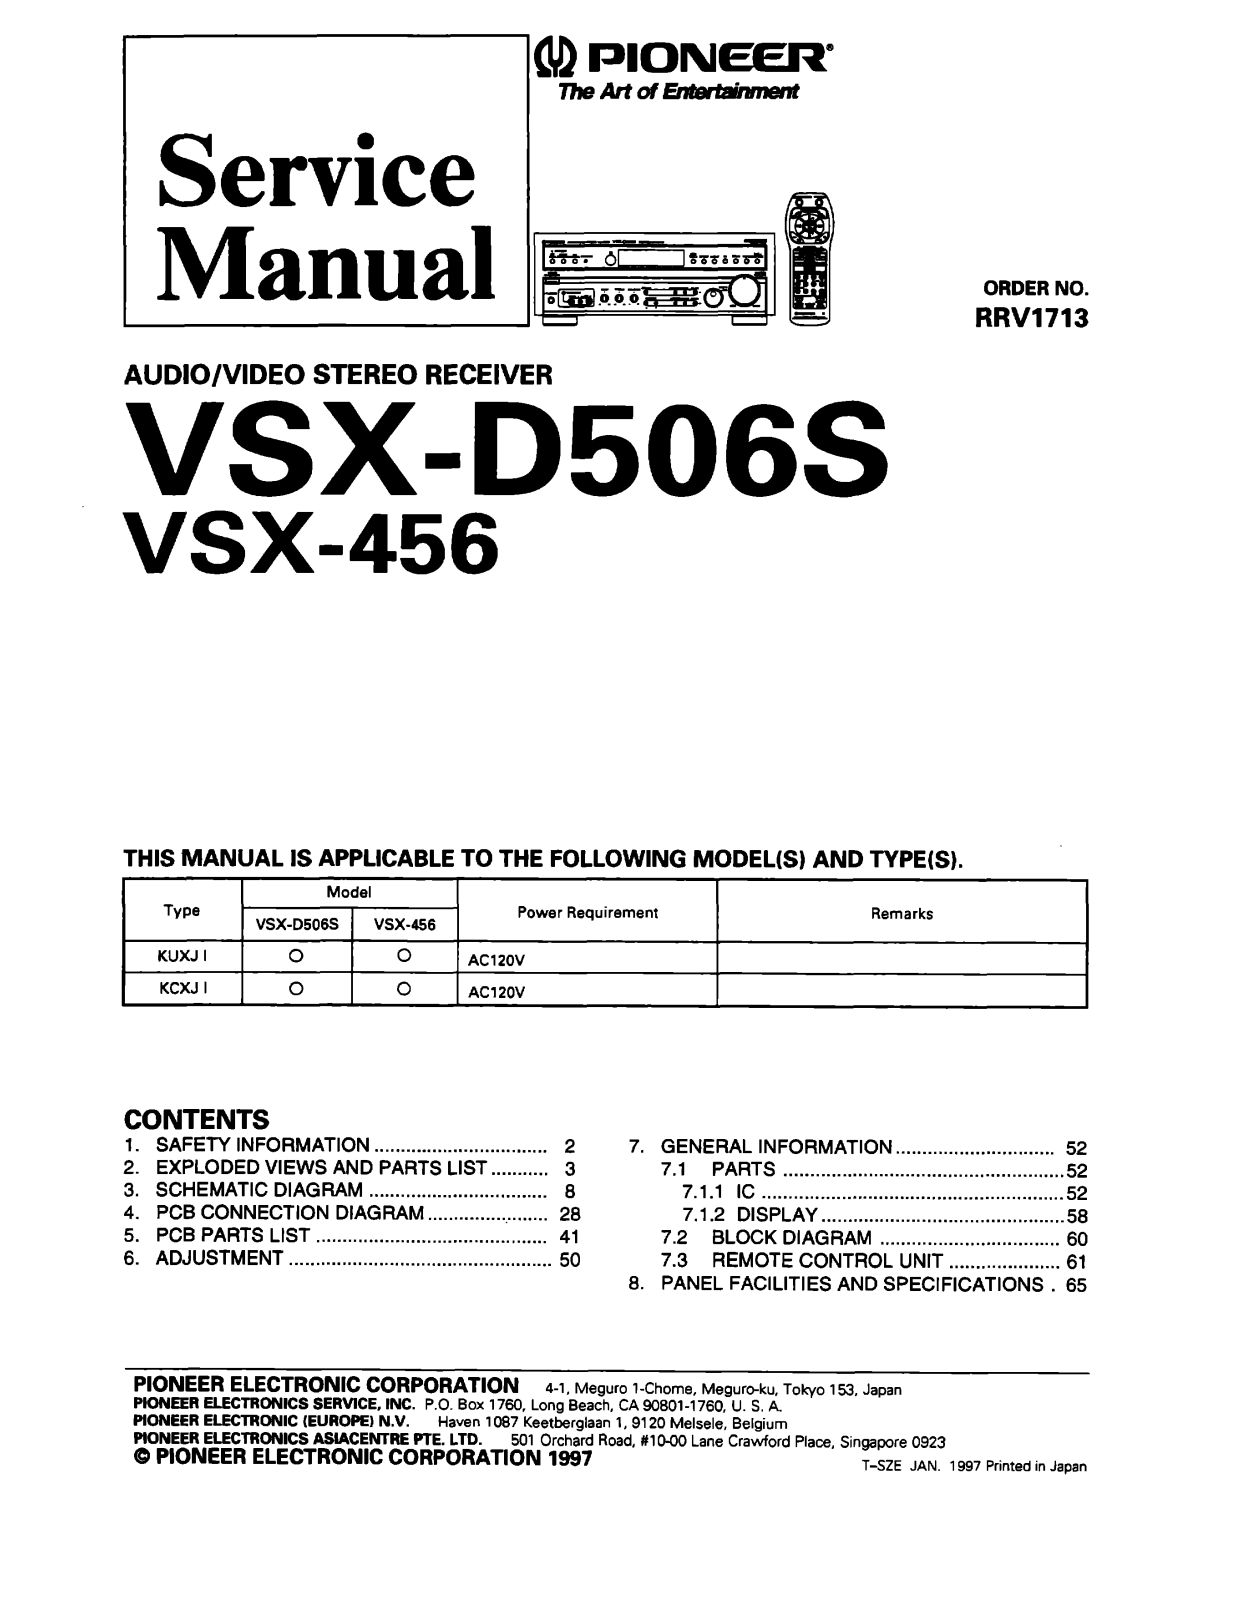 Pioneer VSX-456, VSXD-506-S Service manual